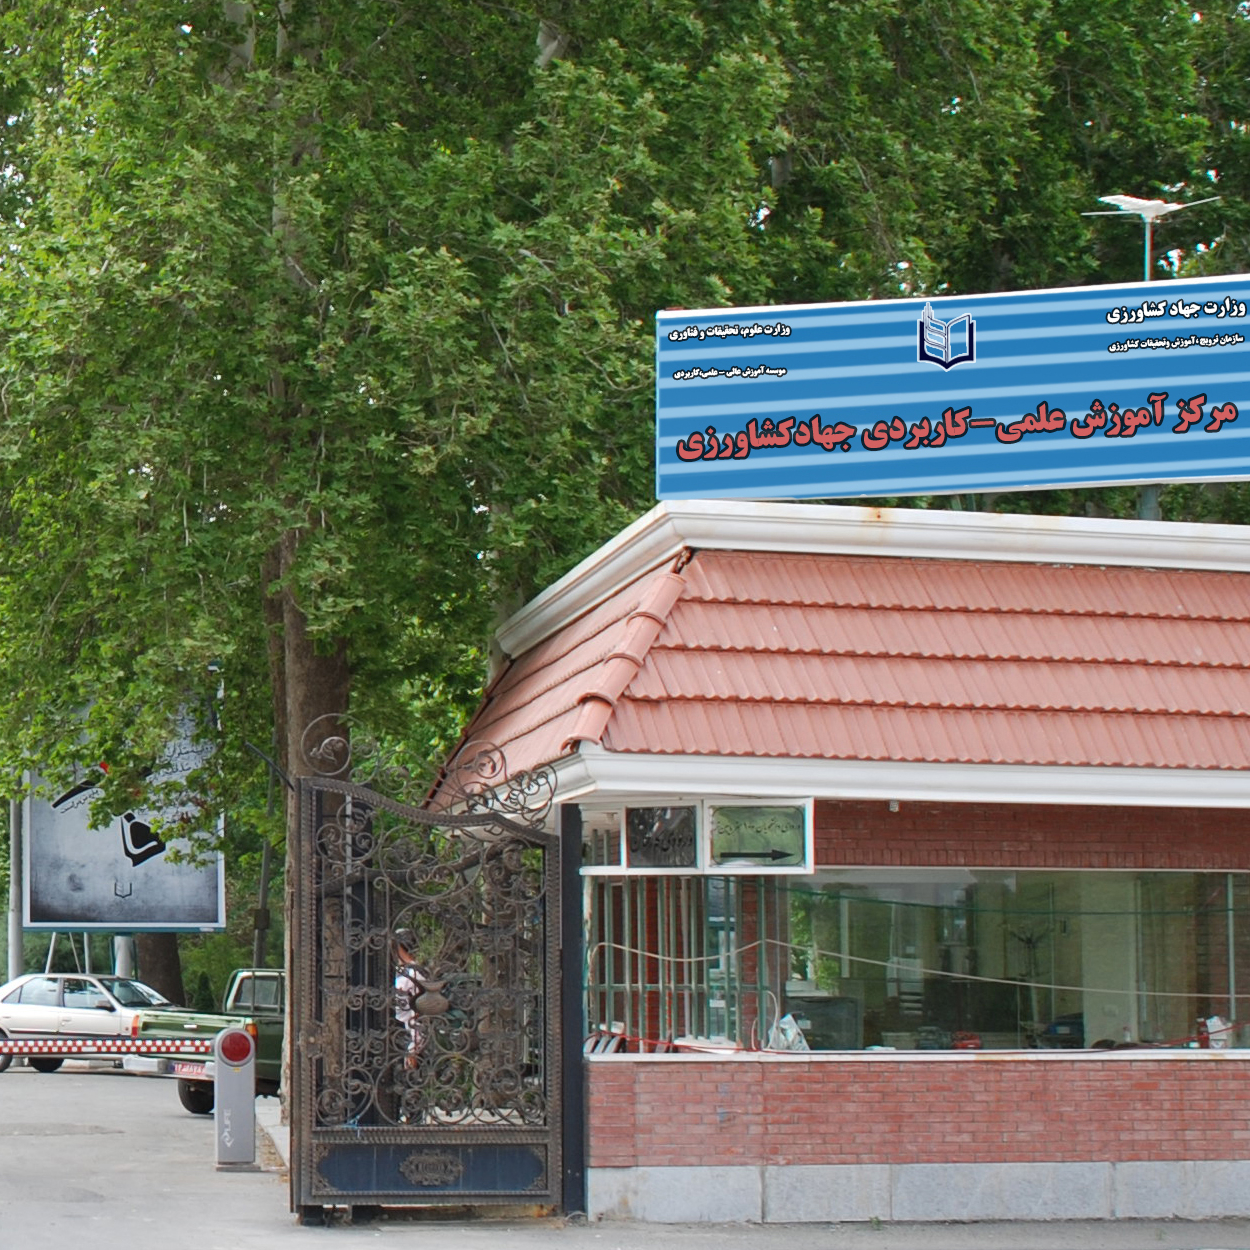 وزارت جهاد کشاورزی، مرکز آموزش عالی امام خمینی(ره)